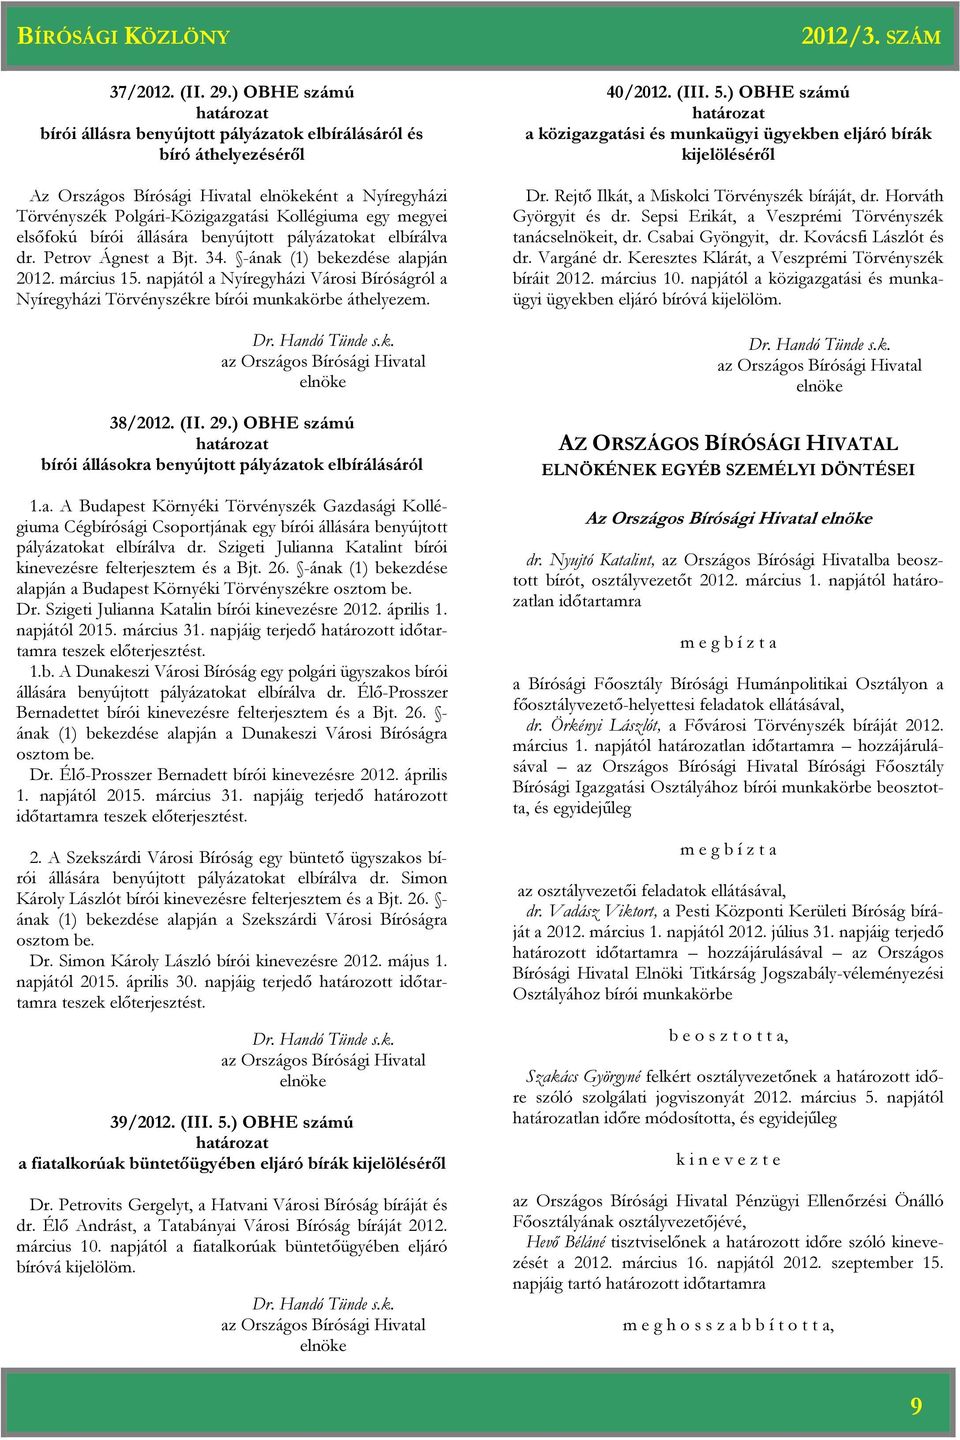 megyei elsőfokú bírói állására benyújtott pályázatokat elbírálva dr. Petrov Ágnest a Bjt. 34. -ának (1) bekezdése alapján 2012. március 15.